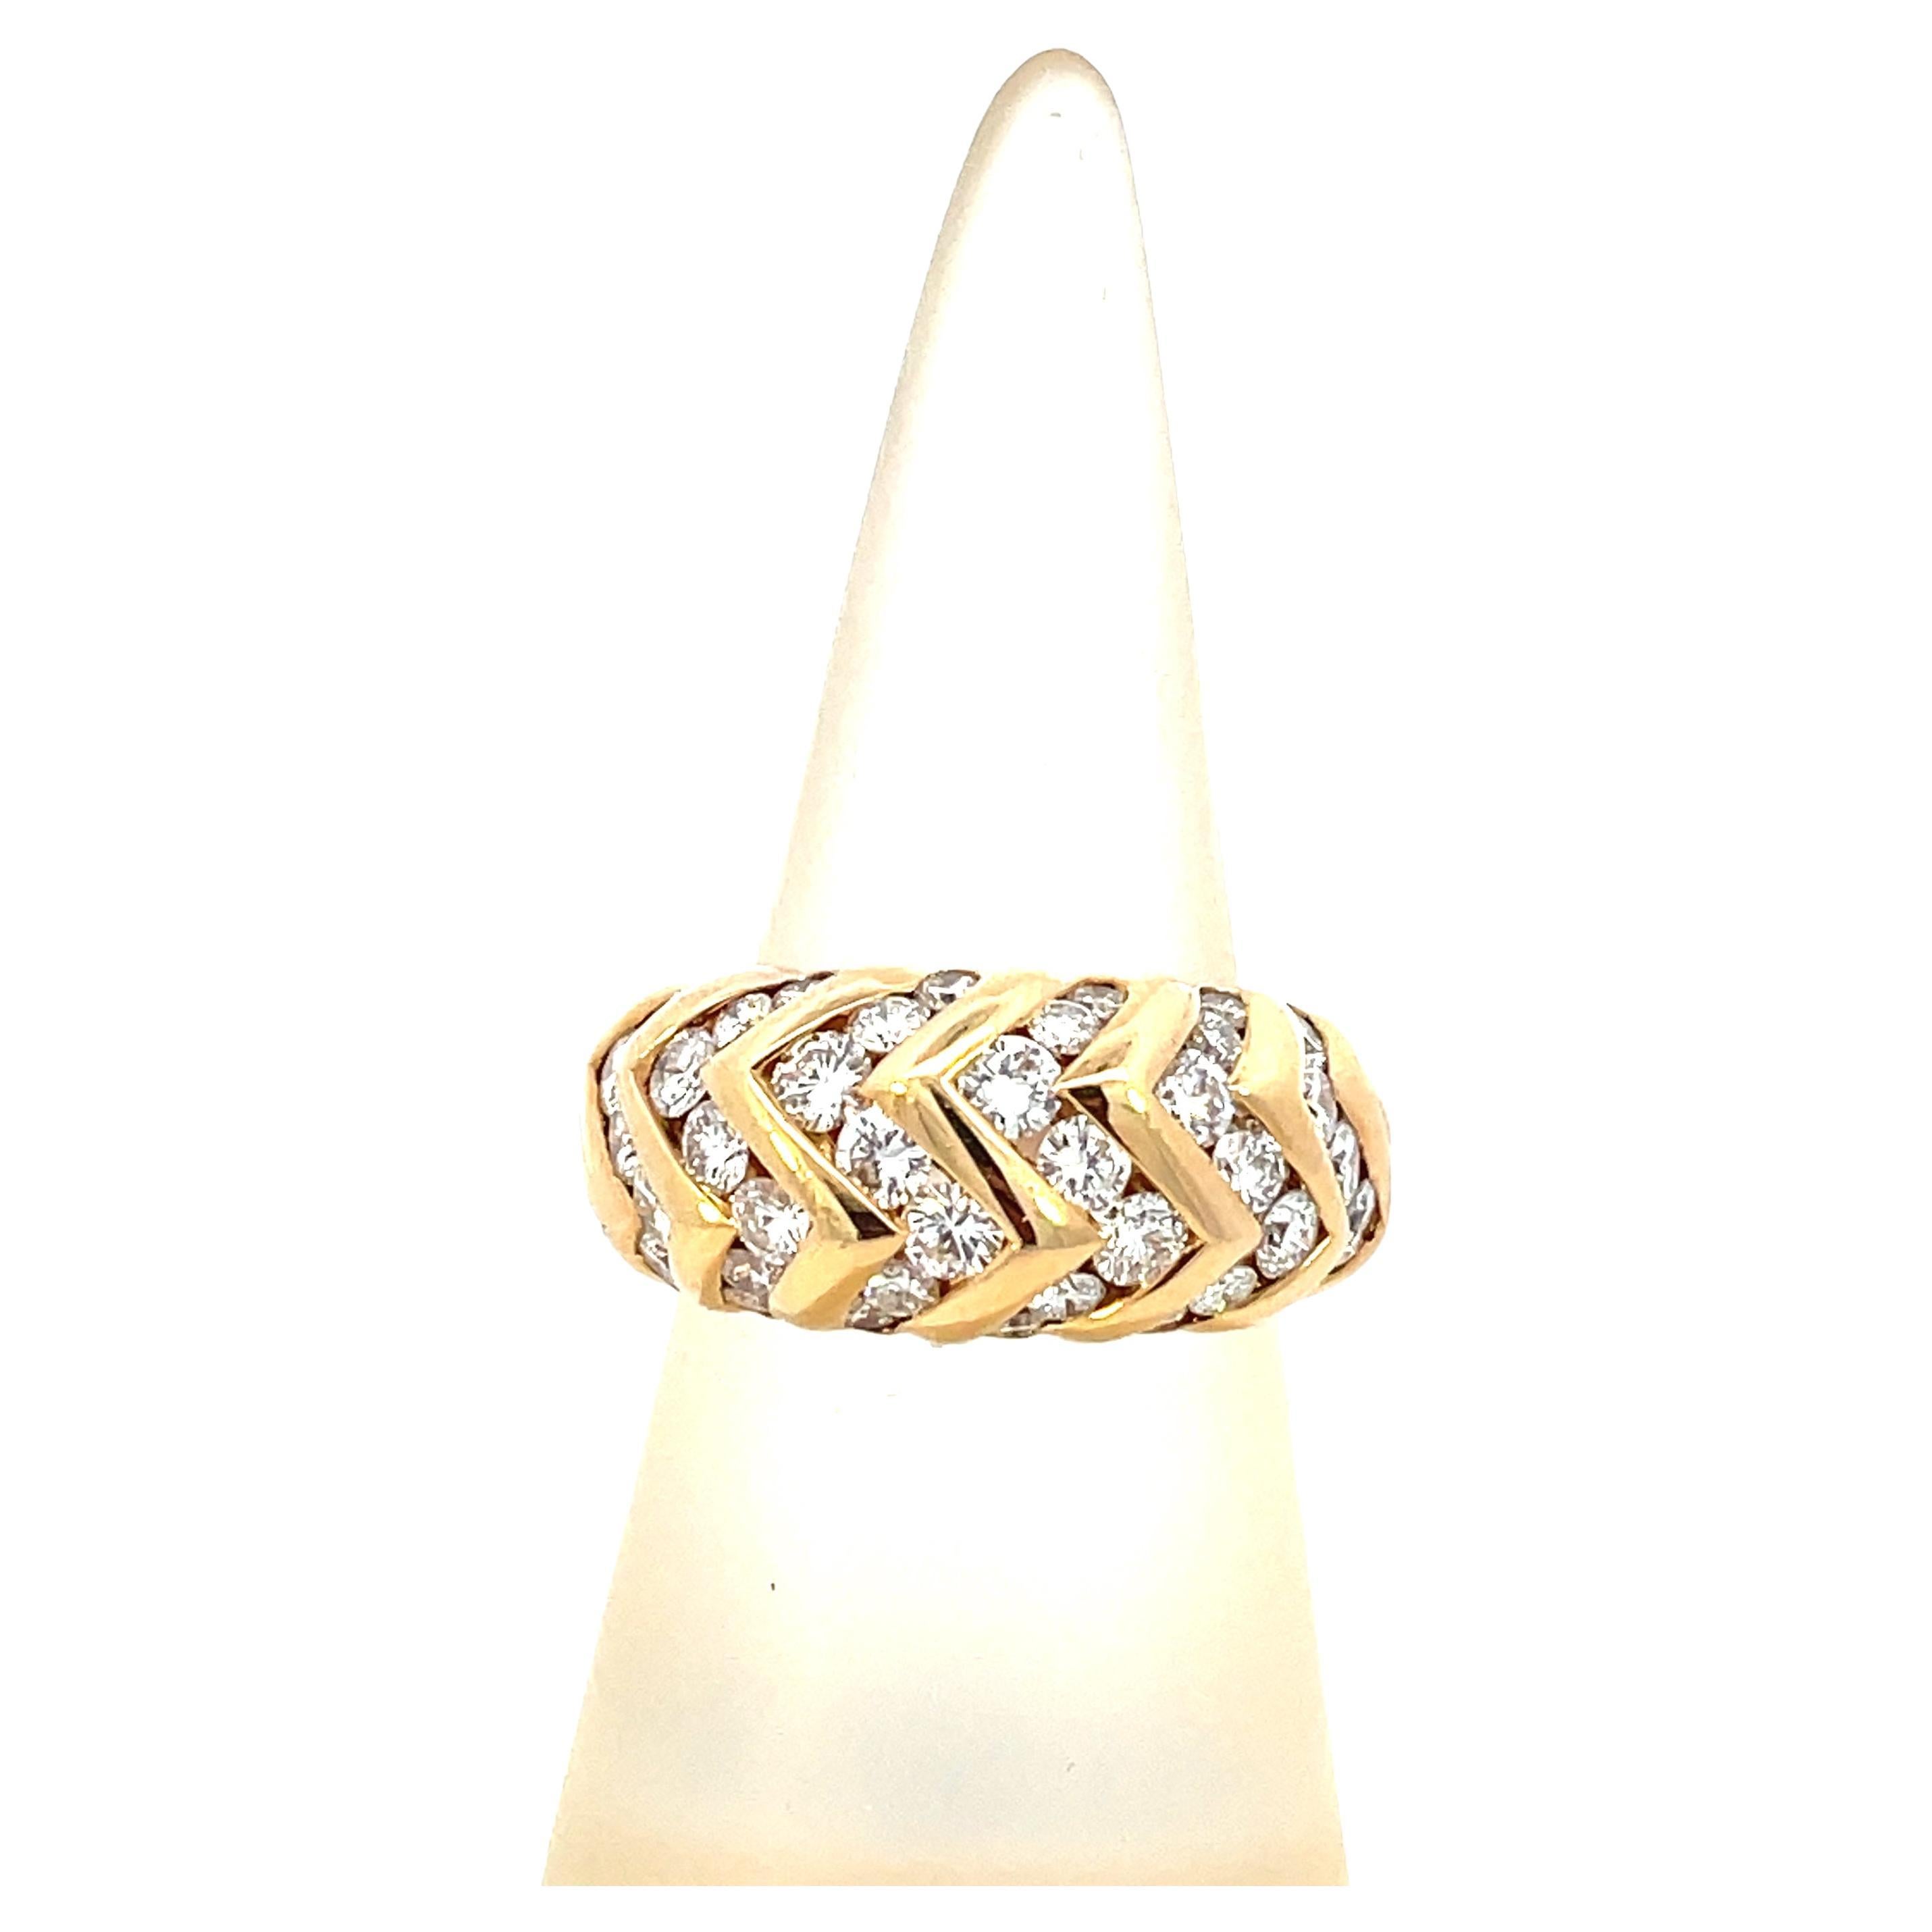 Erhöhen Sie Ihren Stil mit dem Inbegriff zeitloser Raffinesse - einem Ring aus der Bulgari Spiga Kollektion. Sorgfältig aus opulentem Gold gefertigt und mit 2 Karat glänzenden Bulgari-Diamanten besetzt, verkörpert dieser Ring die Essenz des Luxus.